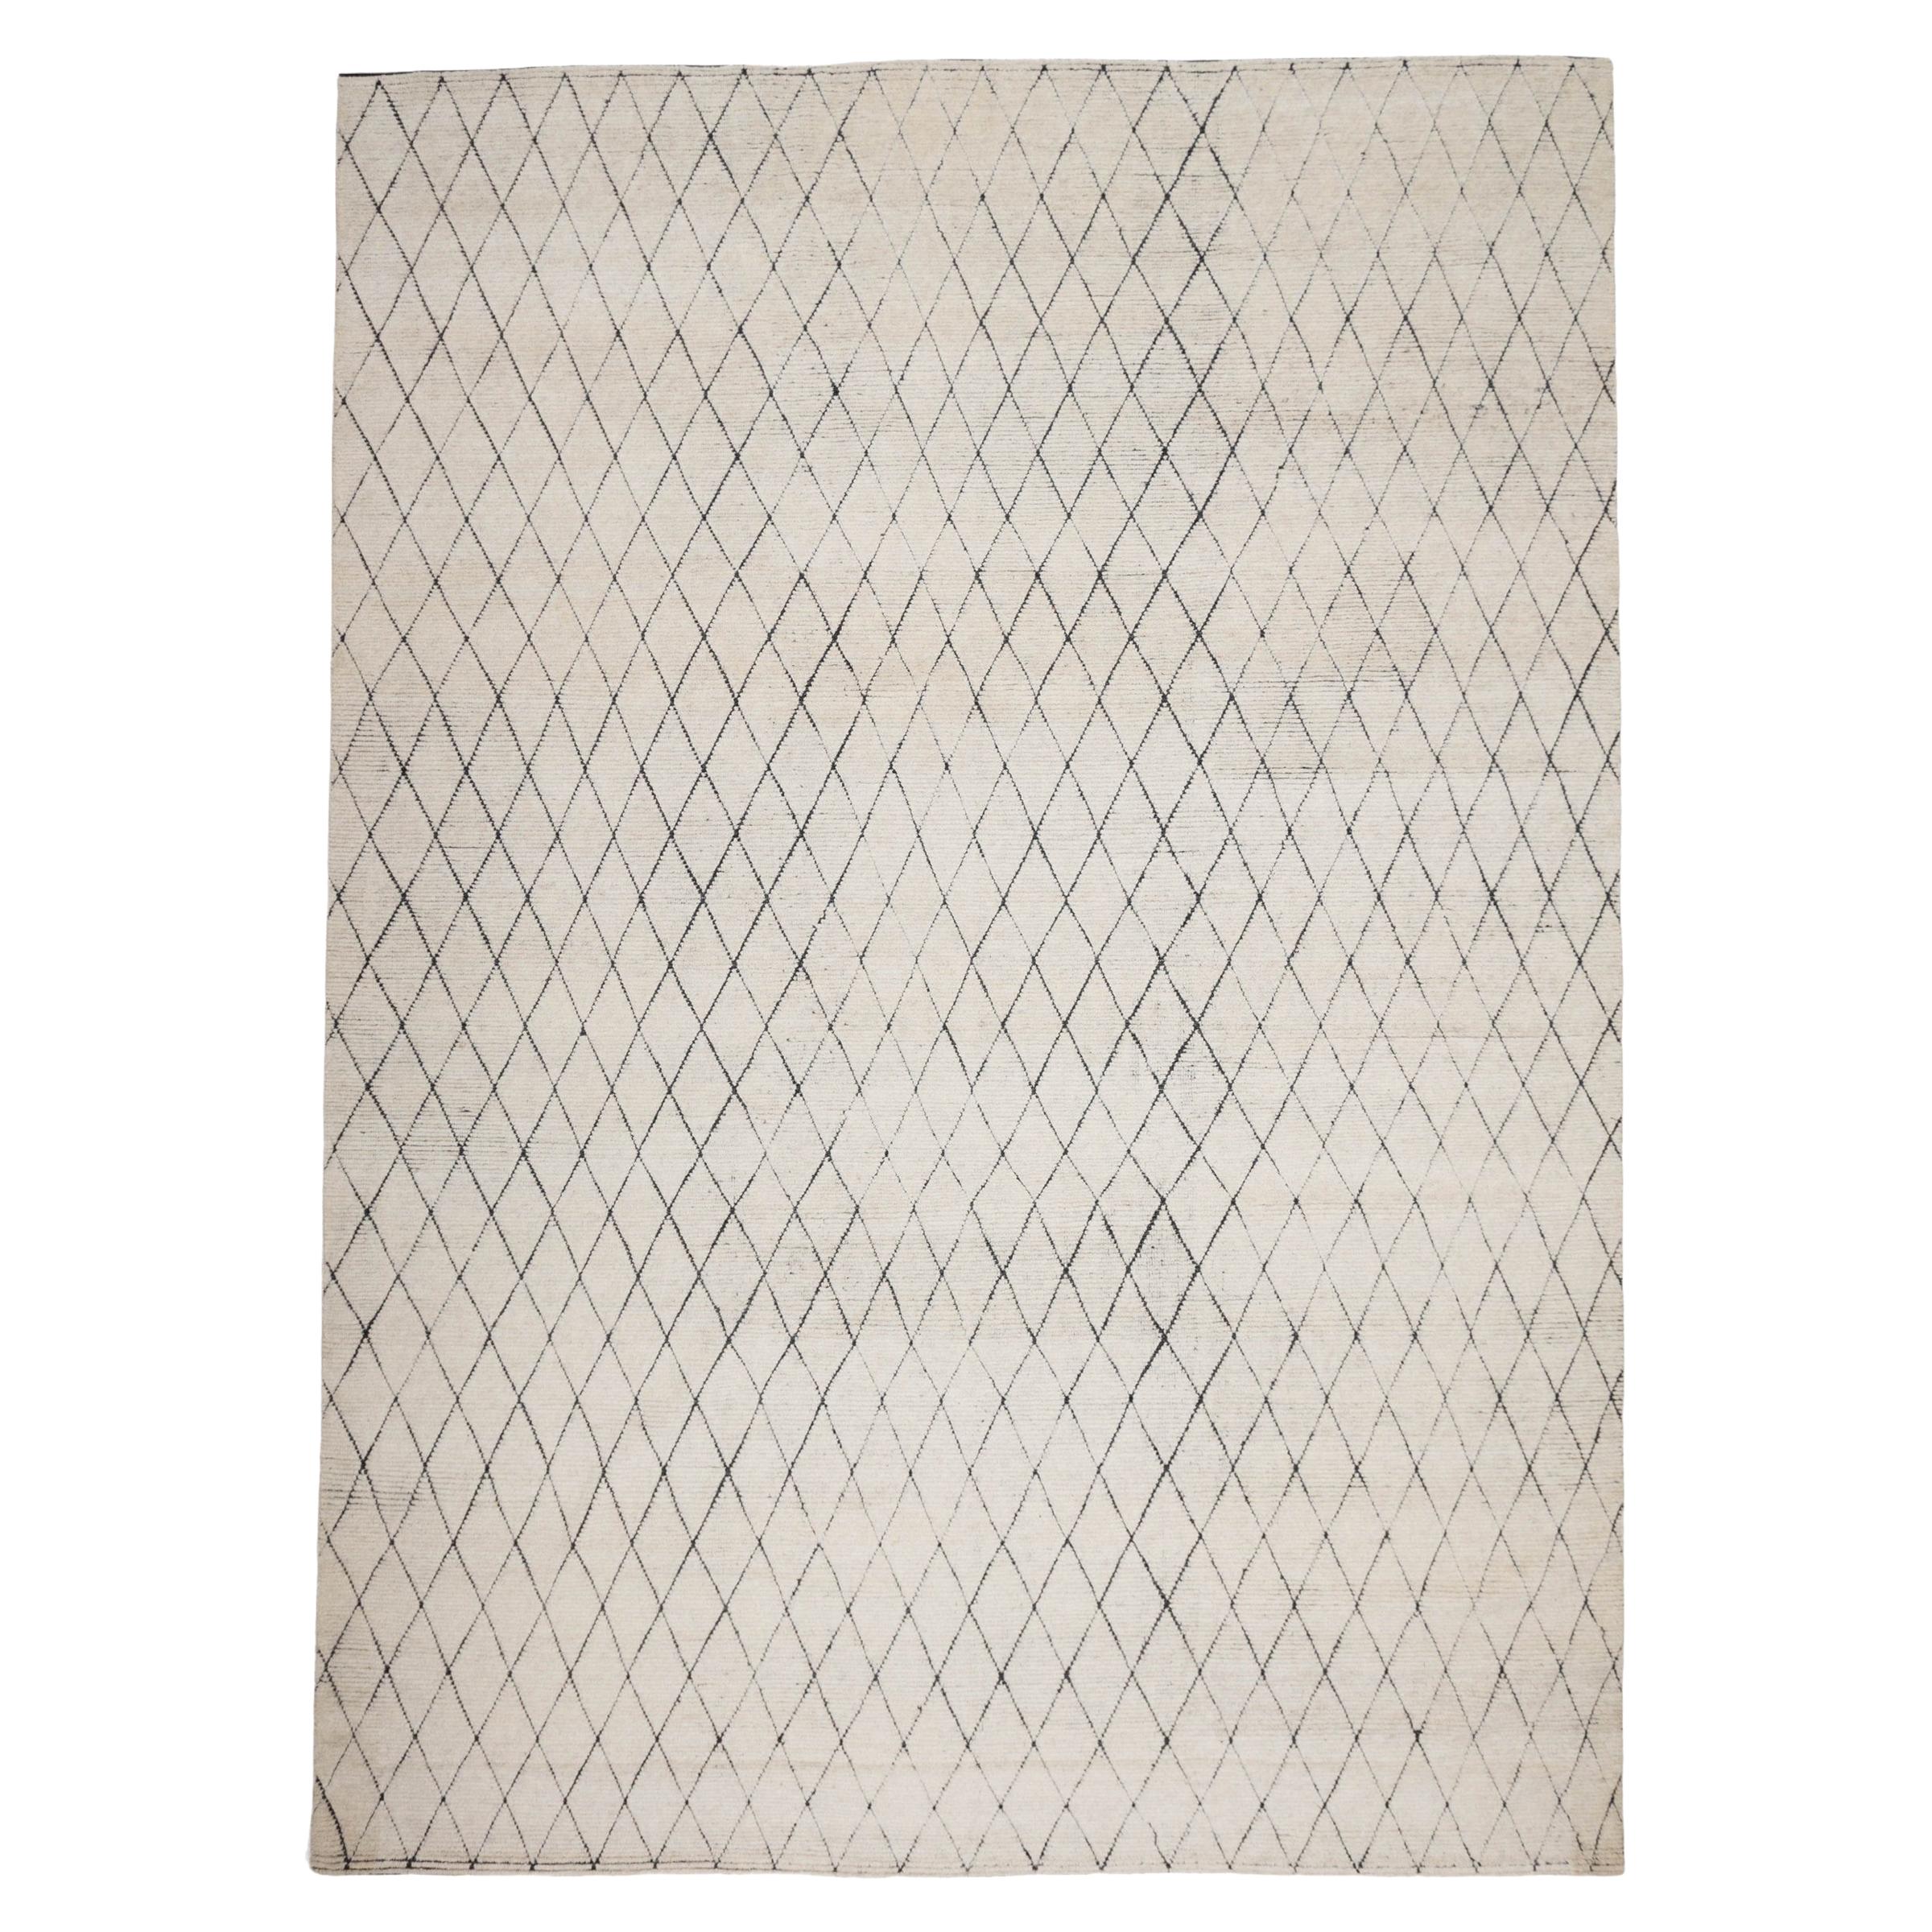 Postmodern Minimalist Diamond Pattern Hand-Knotted Cream Wool Rug